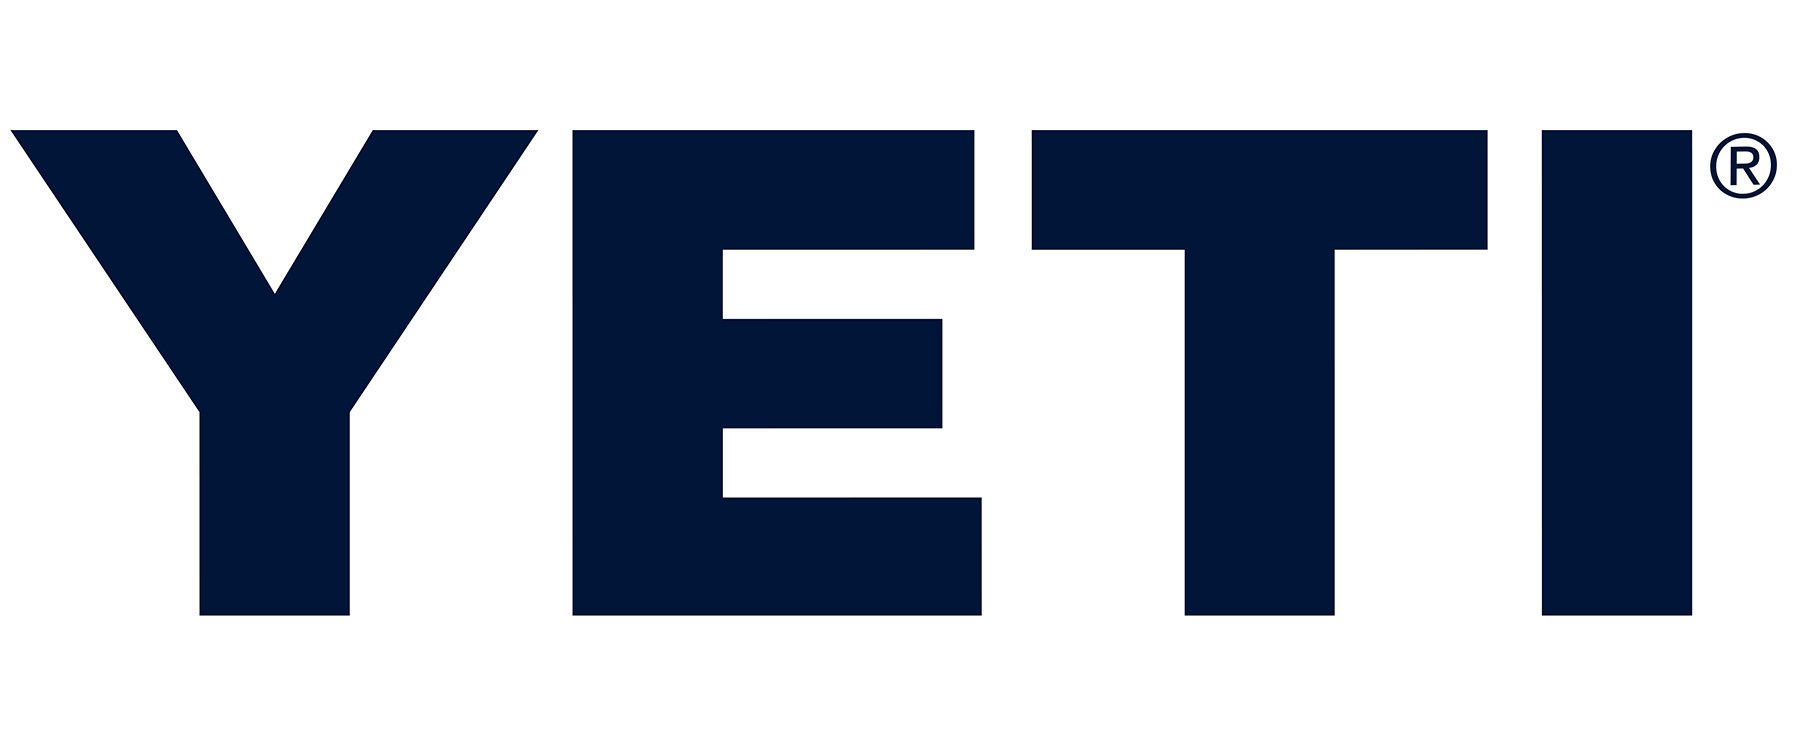 Copy of YETI-Navy.jpg